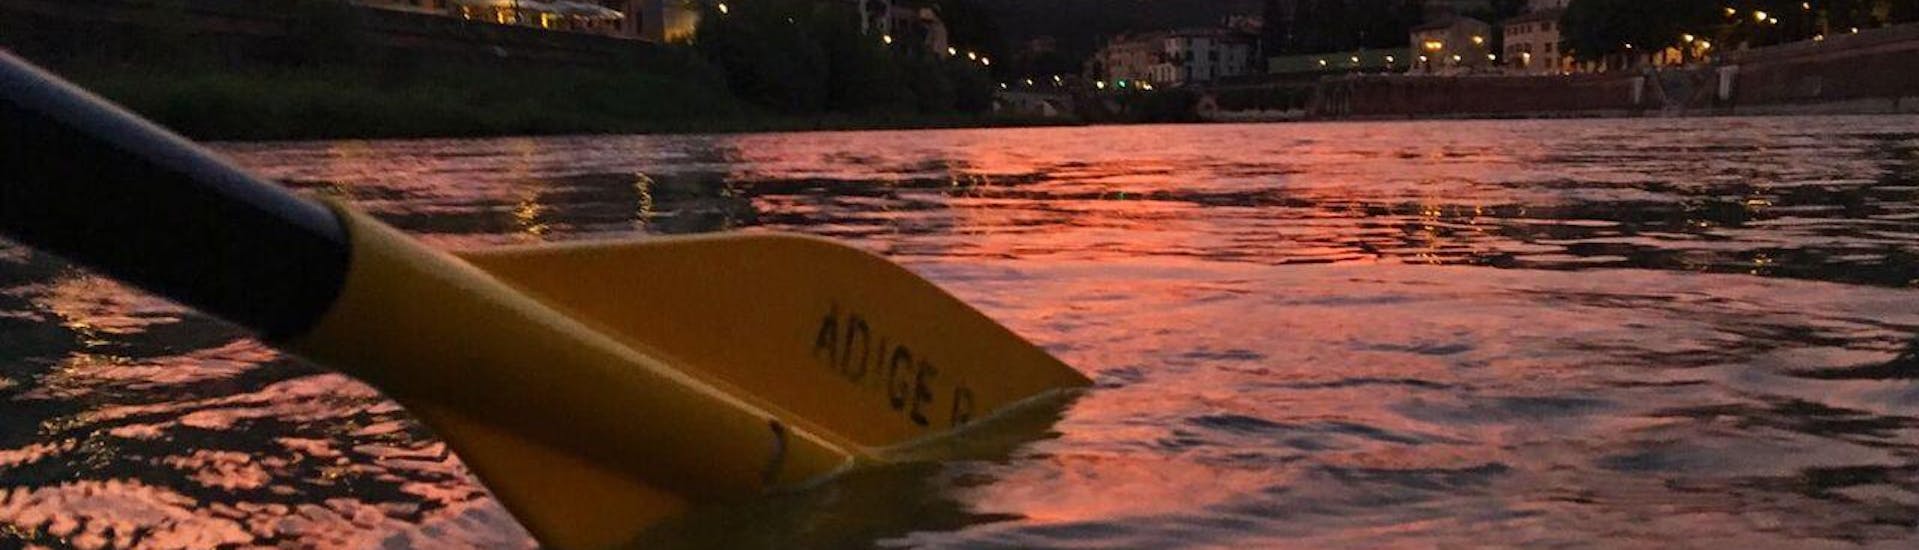 Rafting op de Adige met Aperitief.